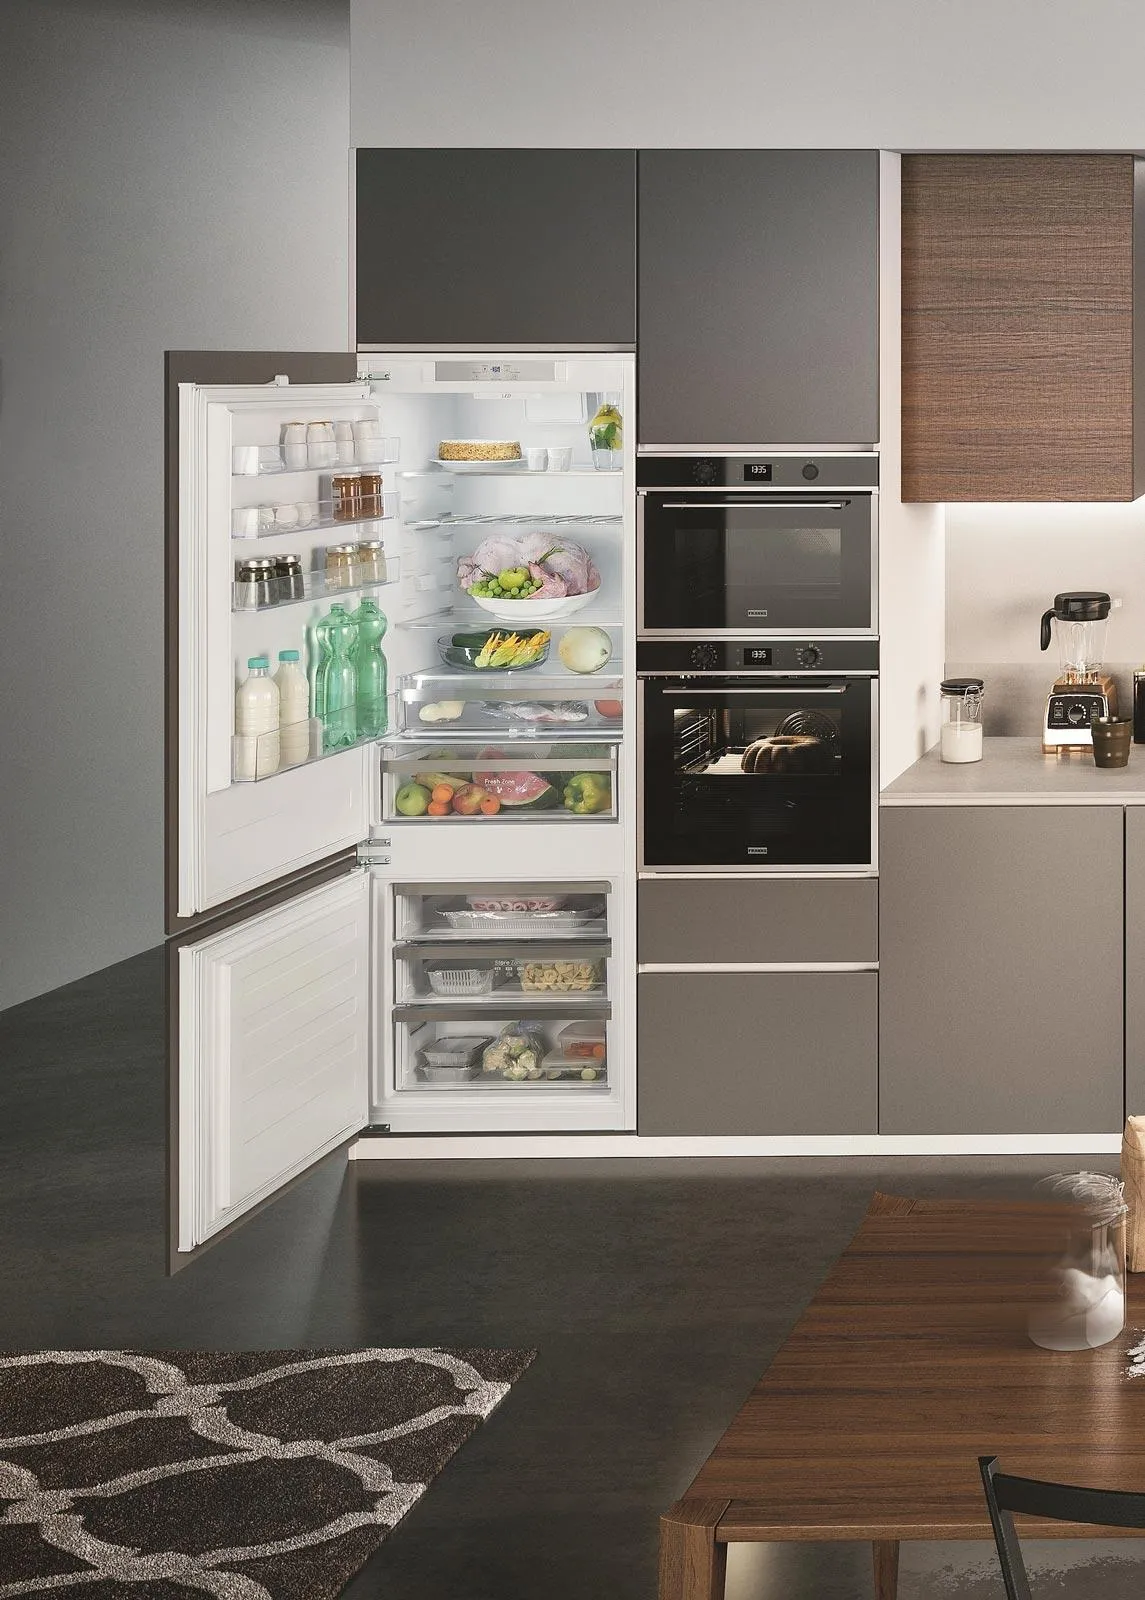 15 frigoriferi da incasso: misure, silenziosità, capienza, bassi consumi  Guarda le schede per valutare in dettaglio - Cose di Casa